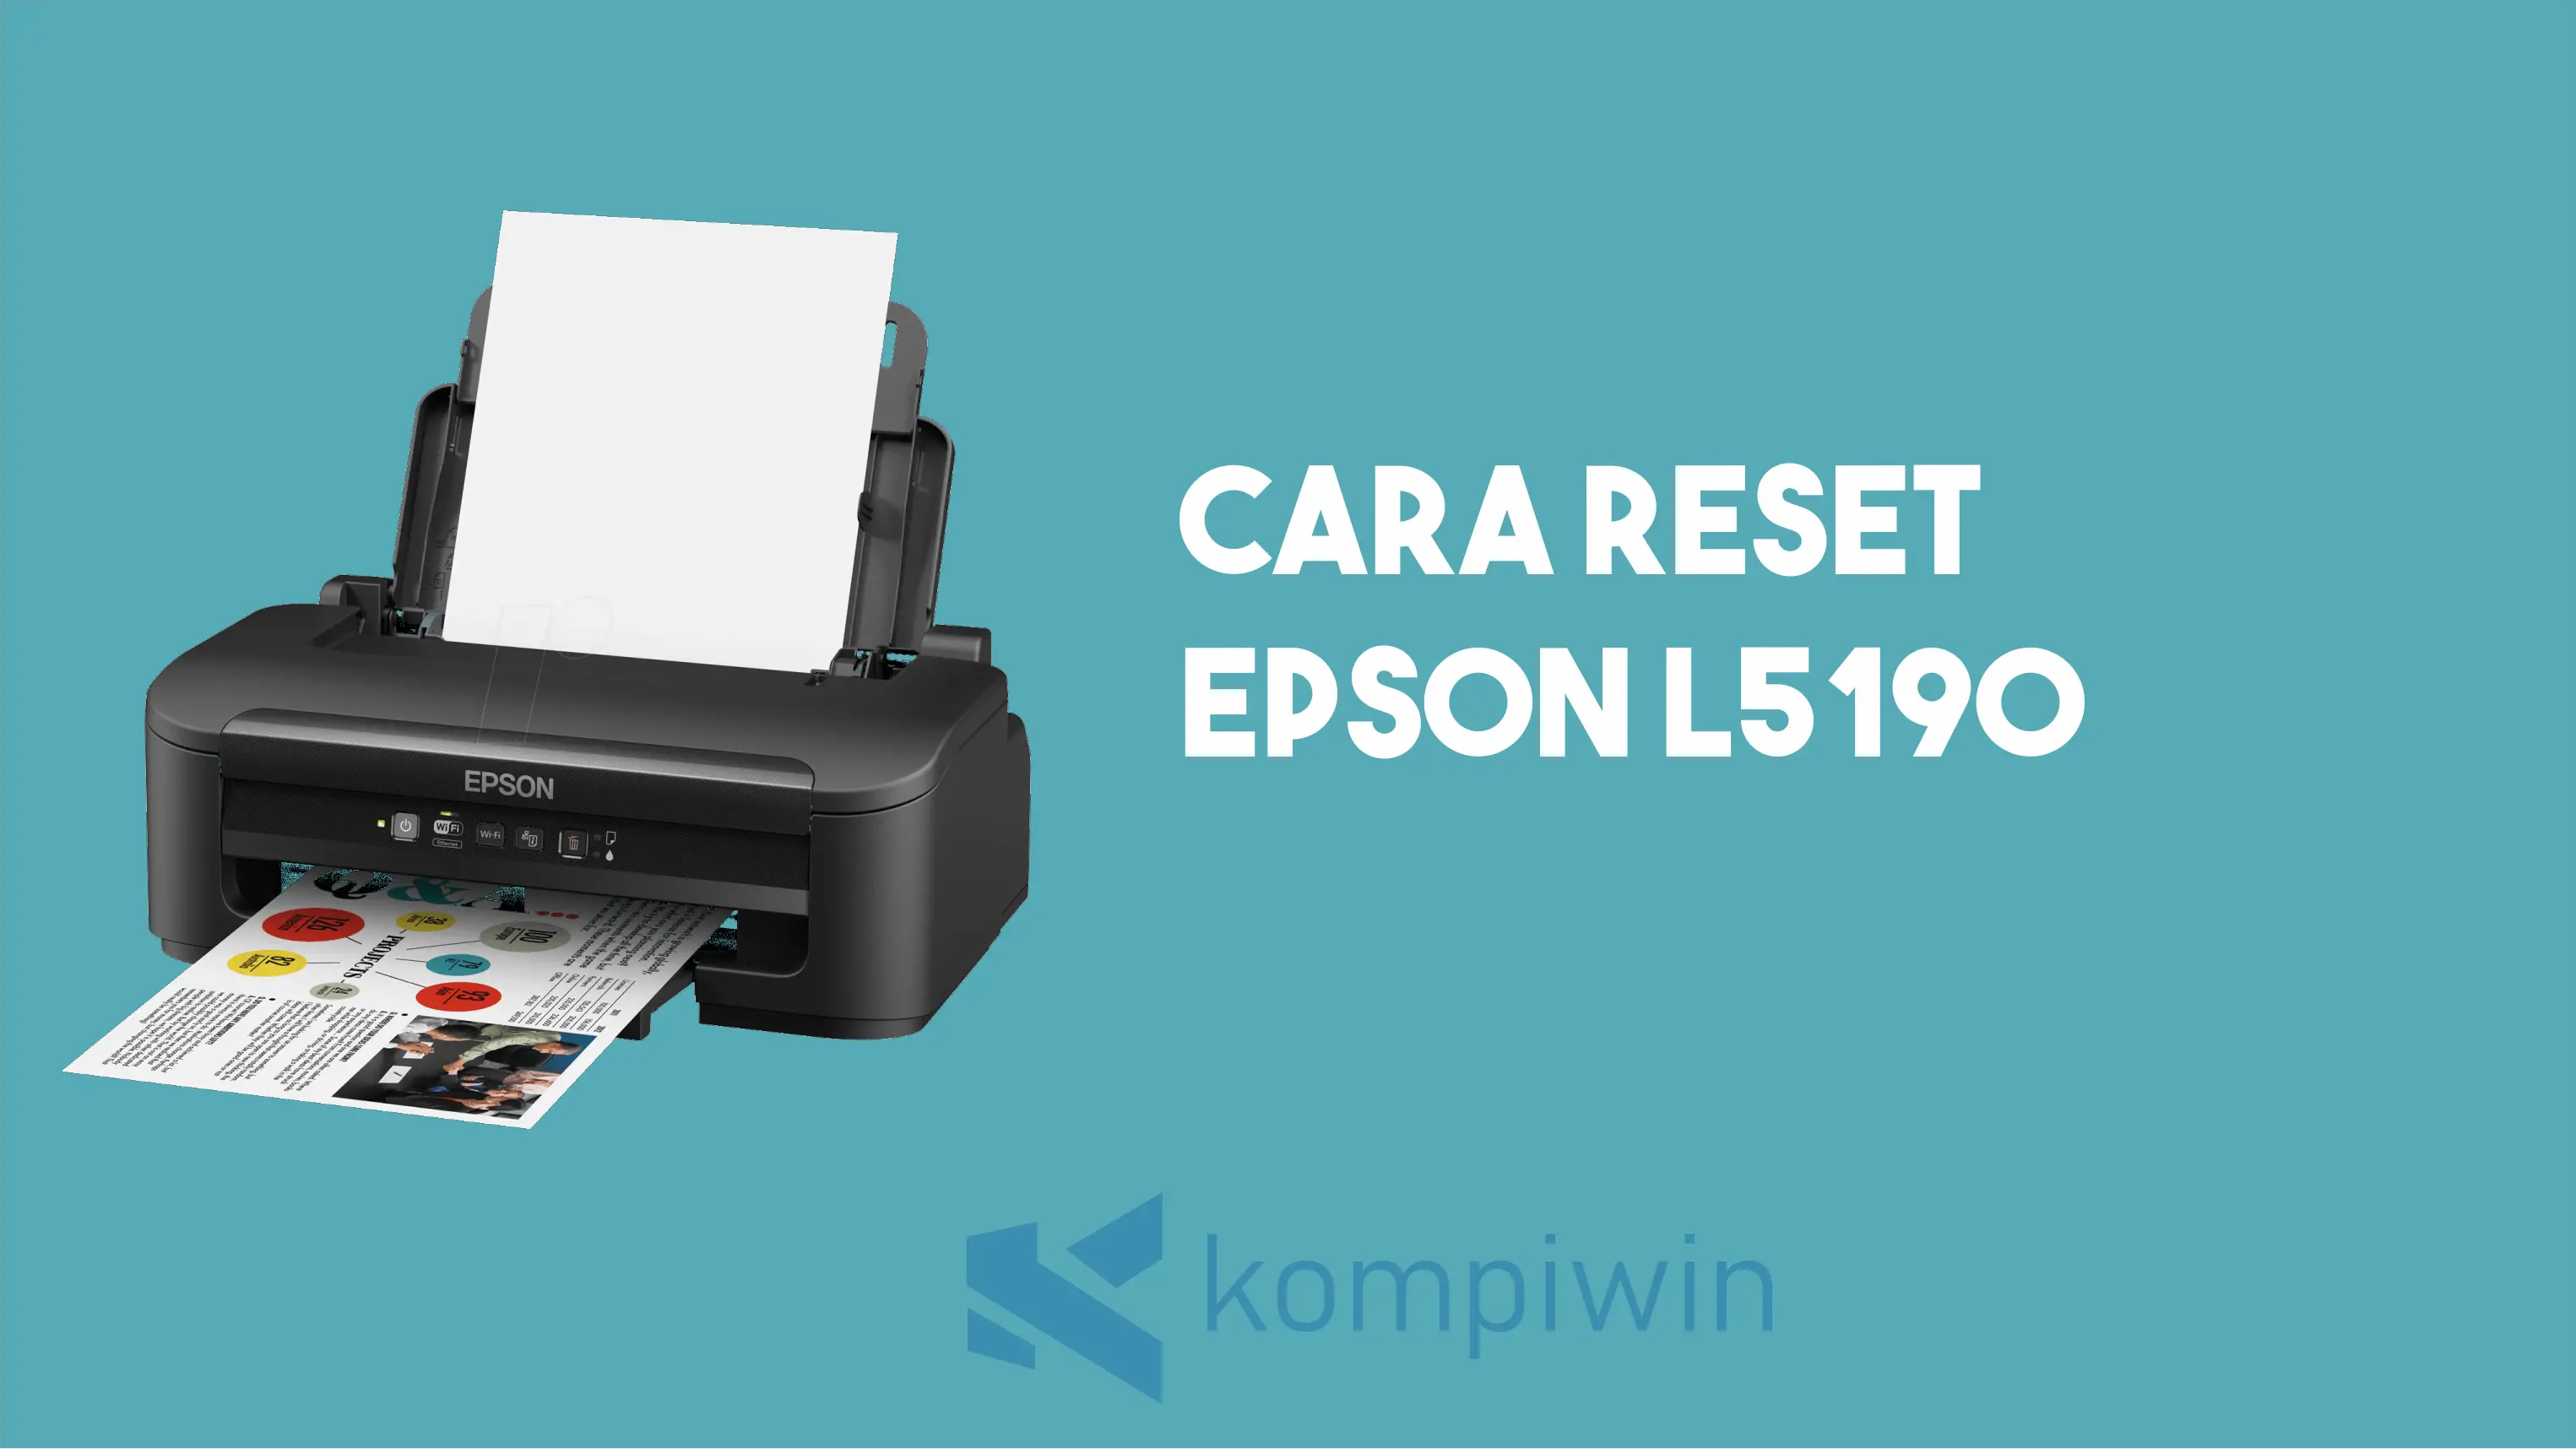 Cara Reset Epson L5190